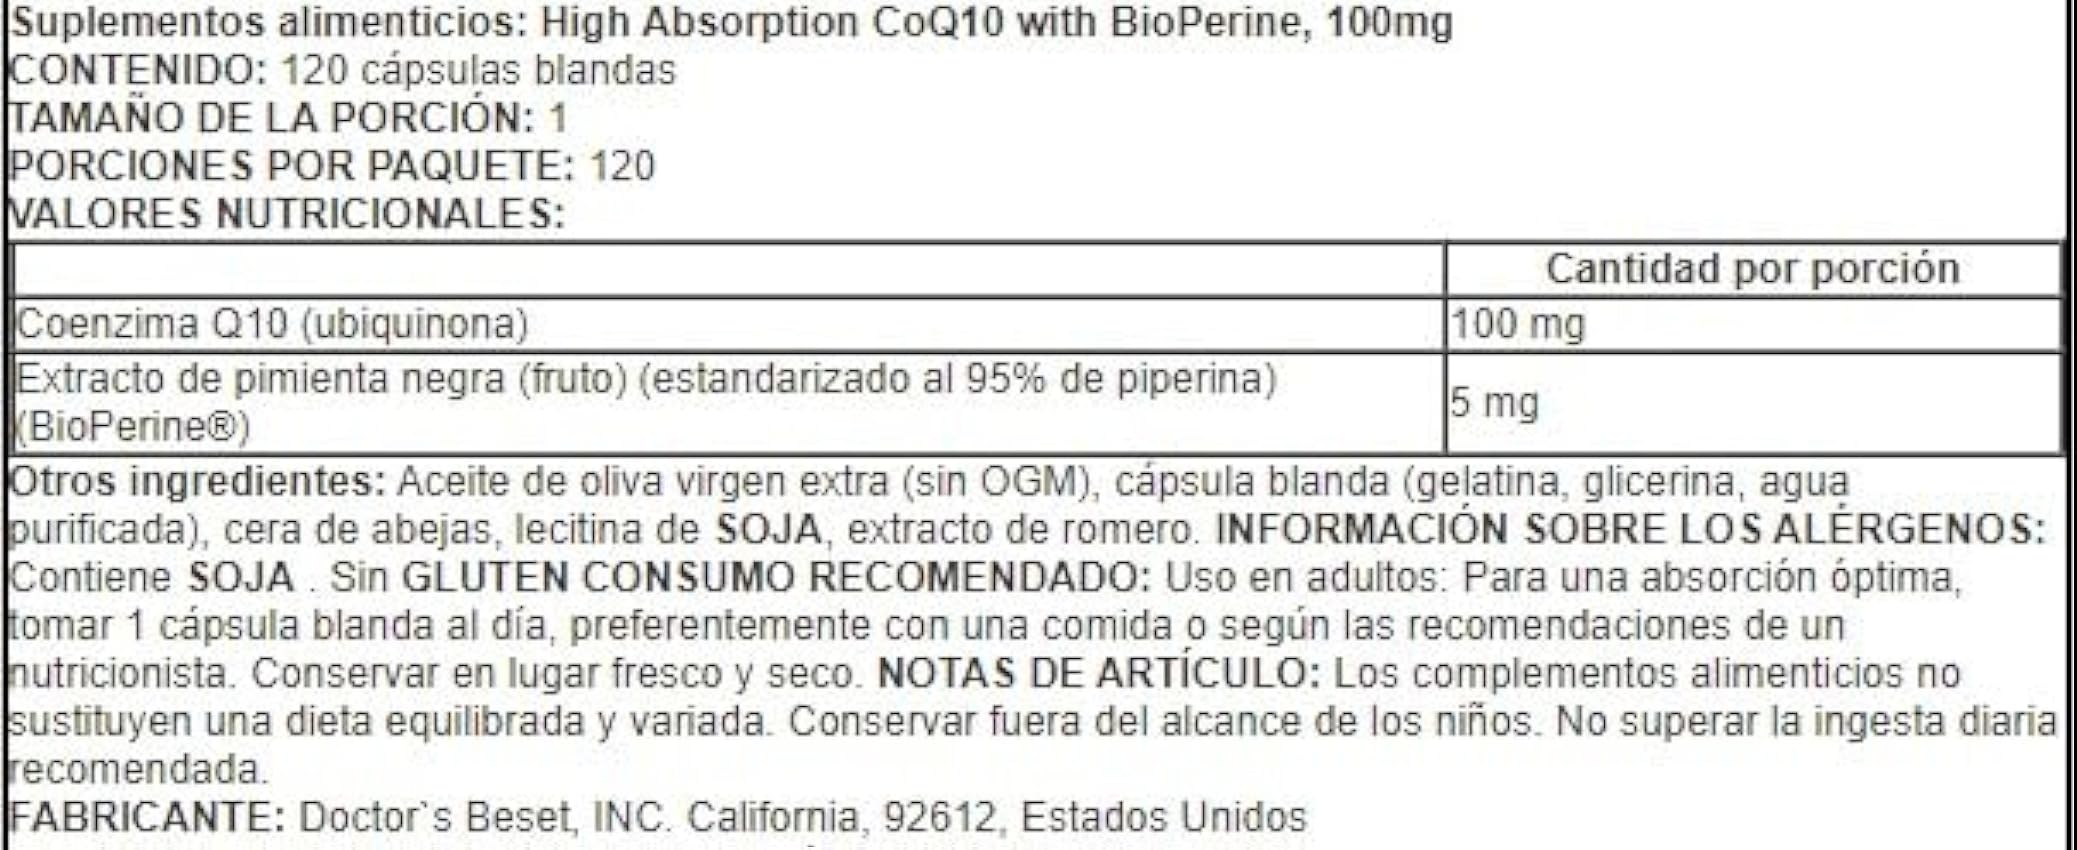 Doctor´s Best CoQ10 de Alta Absorción con BioPerine, 100mg - para Energía y Salud Cardiovascular, 120 cápsulas blandas noUNCHJM